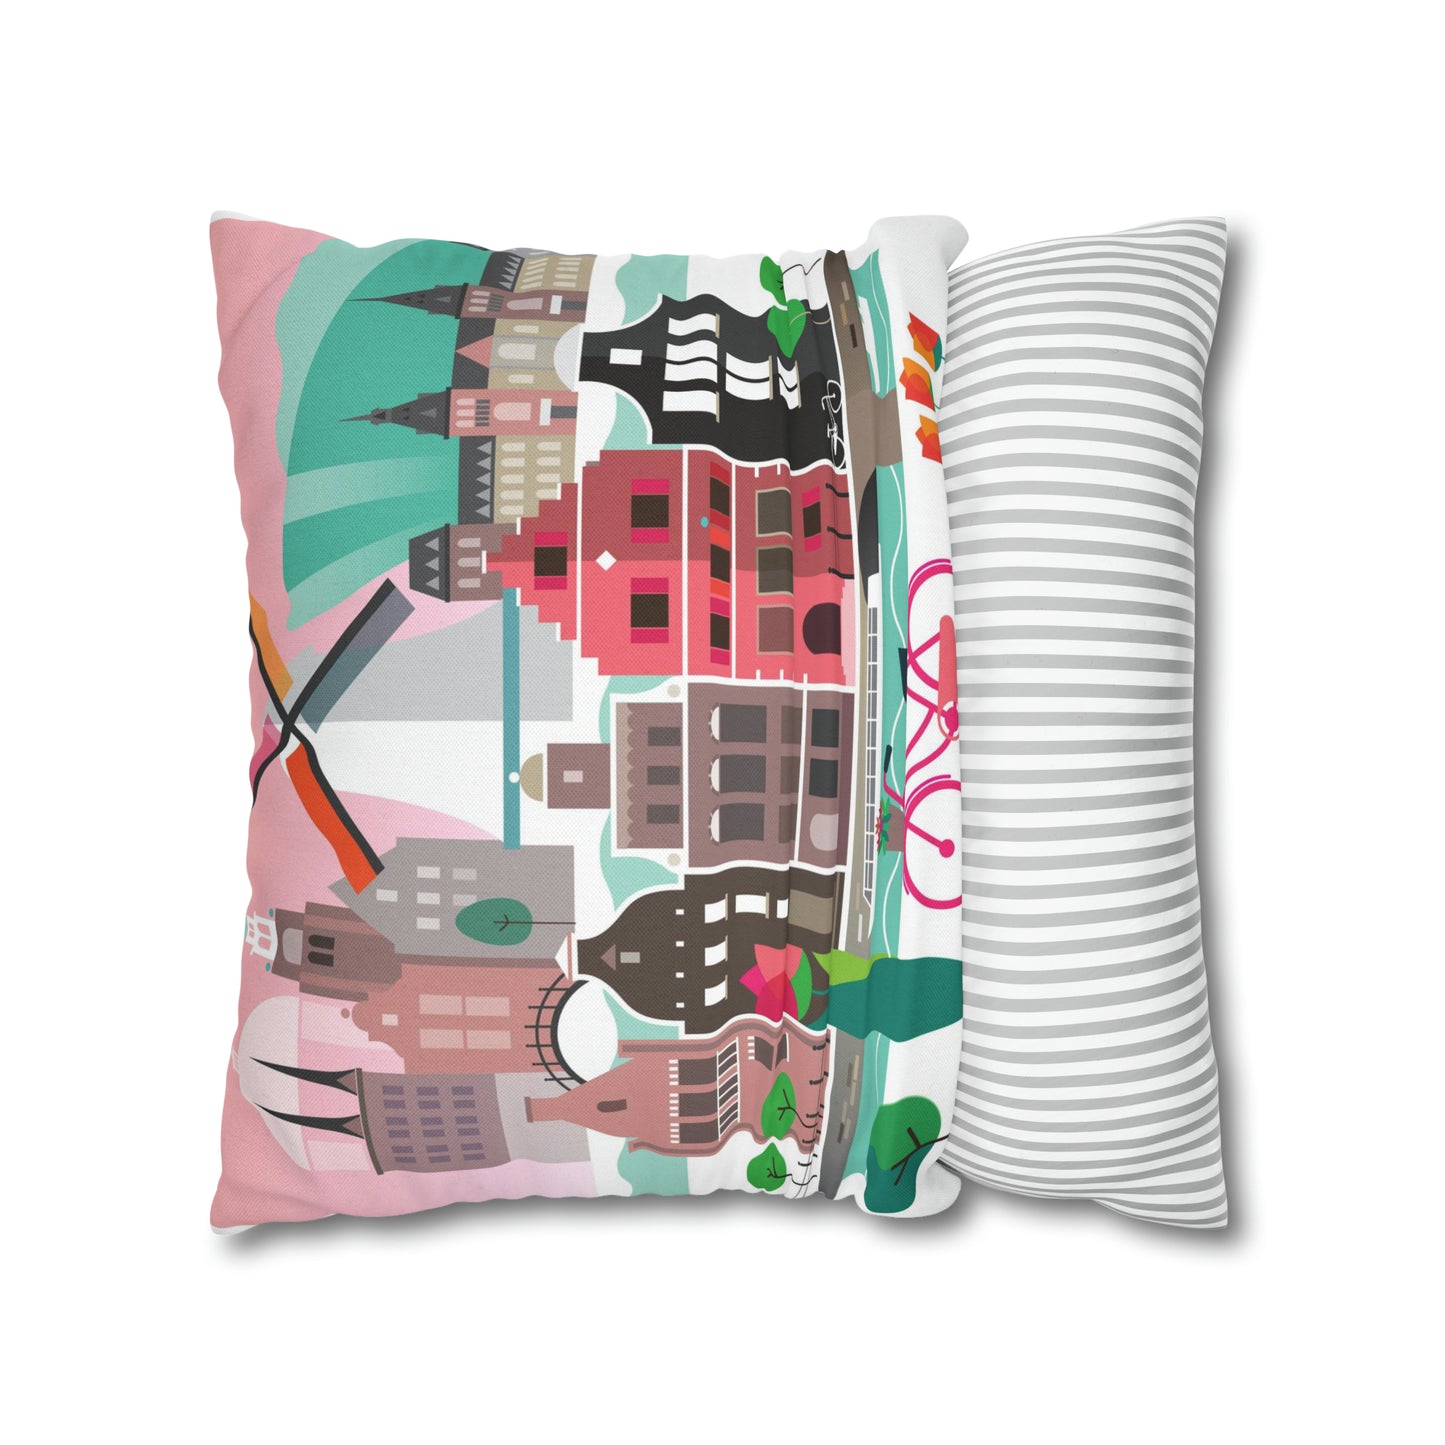 Amsterdam Cushion Cover